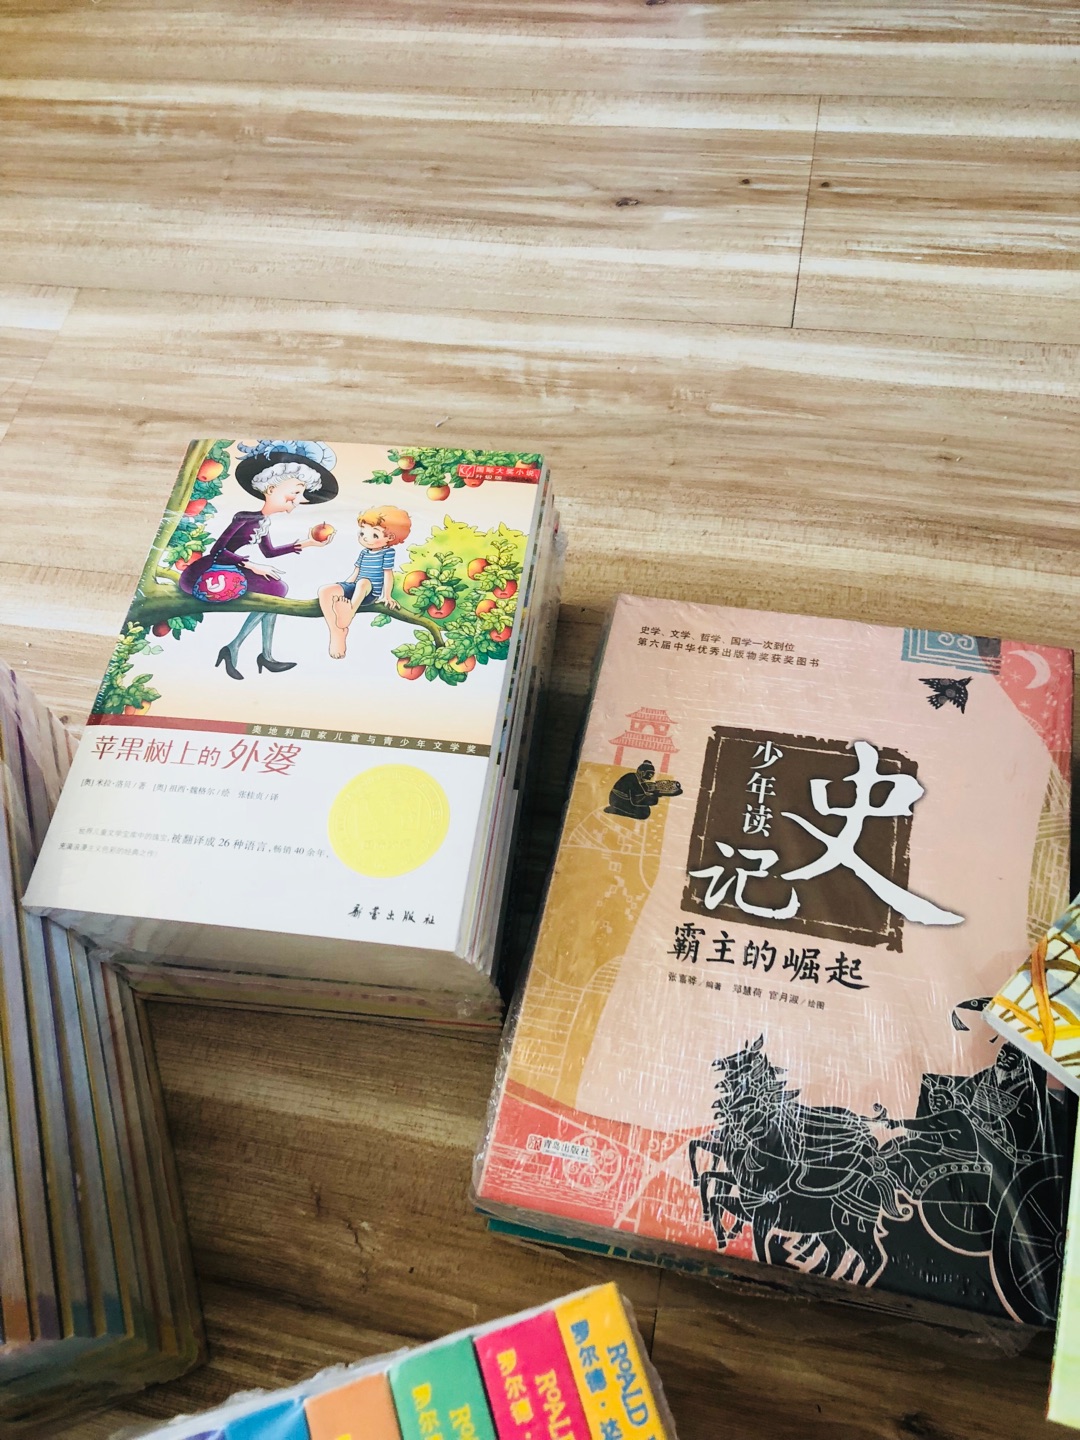 了解中国，学历史，希望孩子会喜欢。最近开始和孩子一起阅读。好事情！